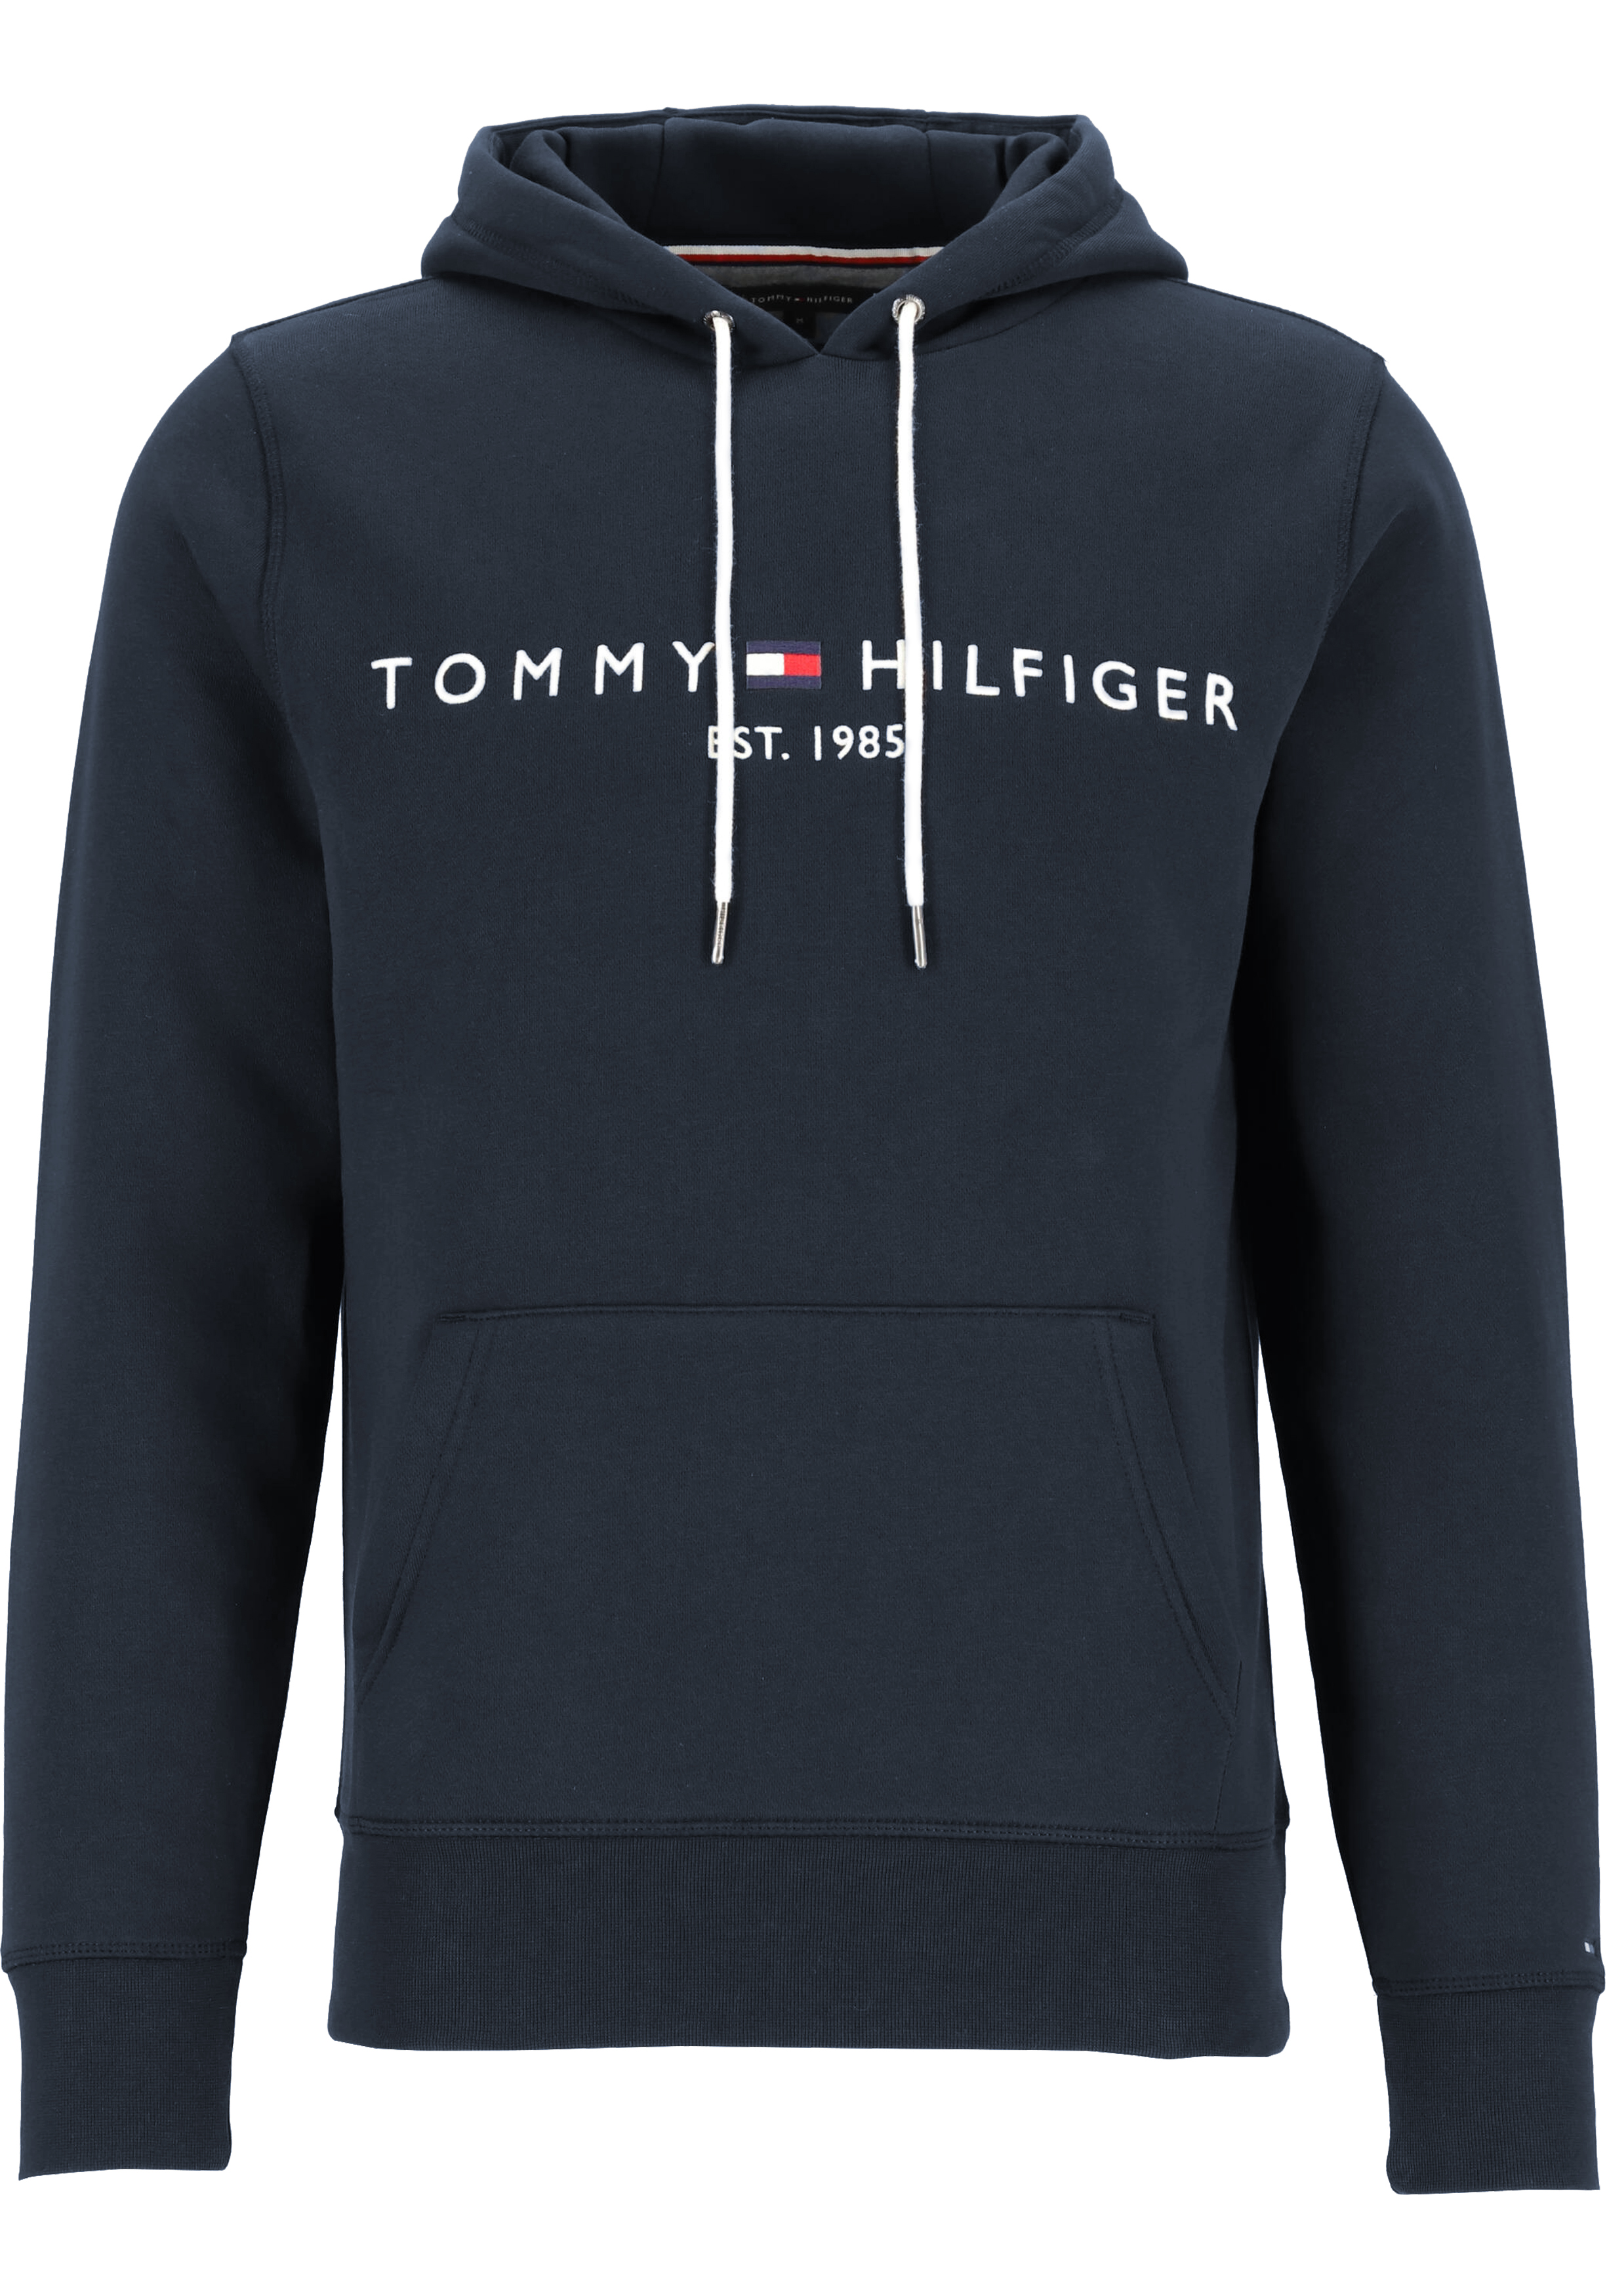 Pigment Stereotype hartstochtelijk Tommy Hilfiger Core Tommy logo hoody, regular fit heren sweathoodie,... -  vakantie DEALS: bestel vele artikelen van topmerken met korting